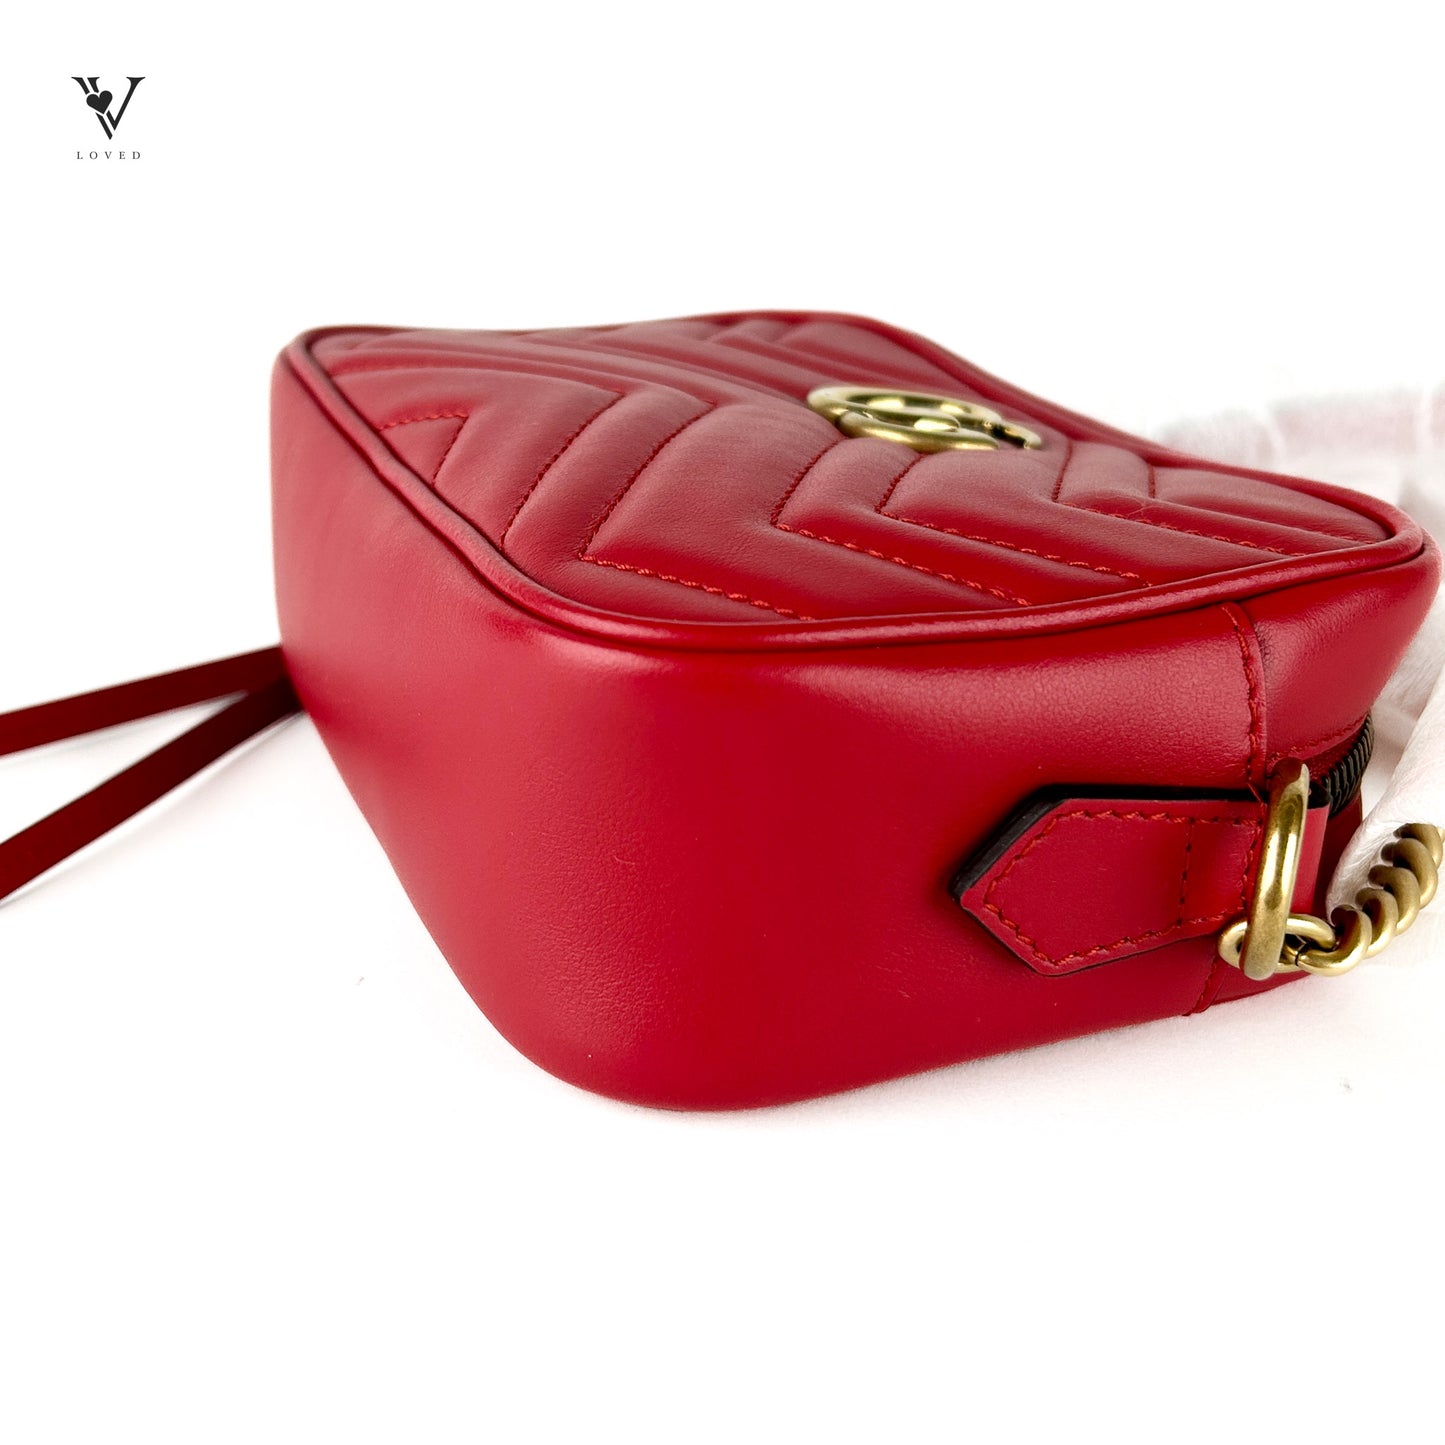 GG Marmont Matelassé Red Camera Bag